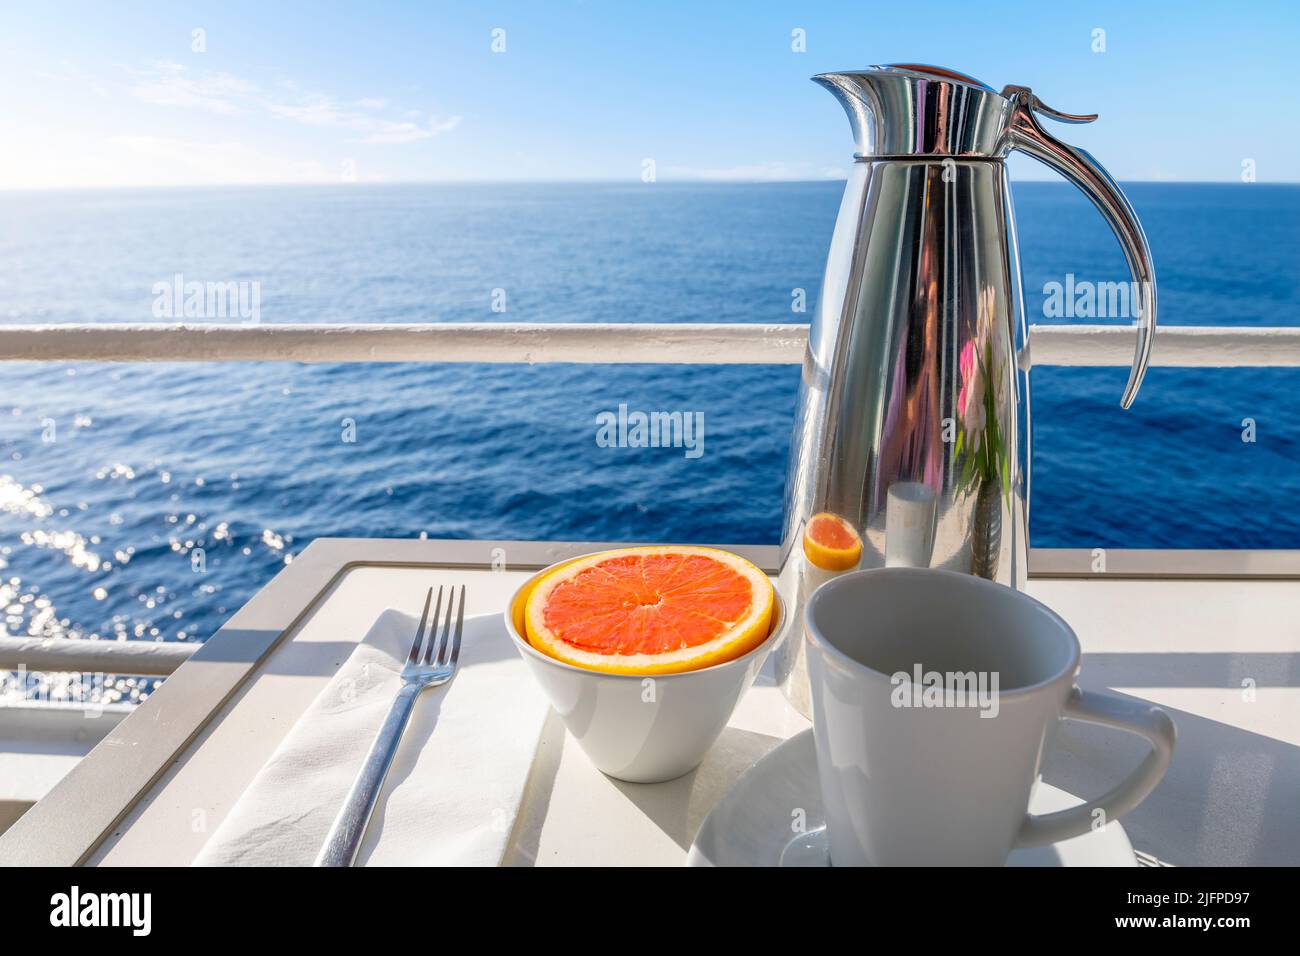 Une carafe de café à côté d'un pamplemousse coupé sur un balcon avec vue sur l'océan d'un bateau de croisière en mer, un jour d'été. Banque D'Images